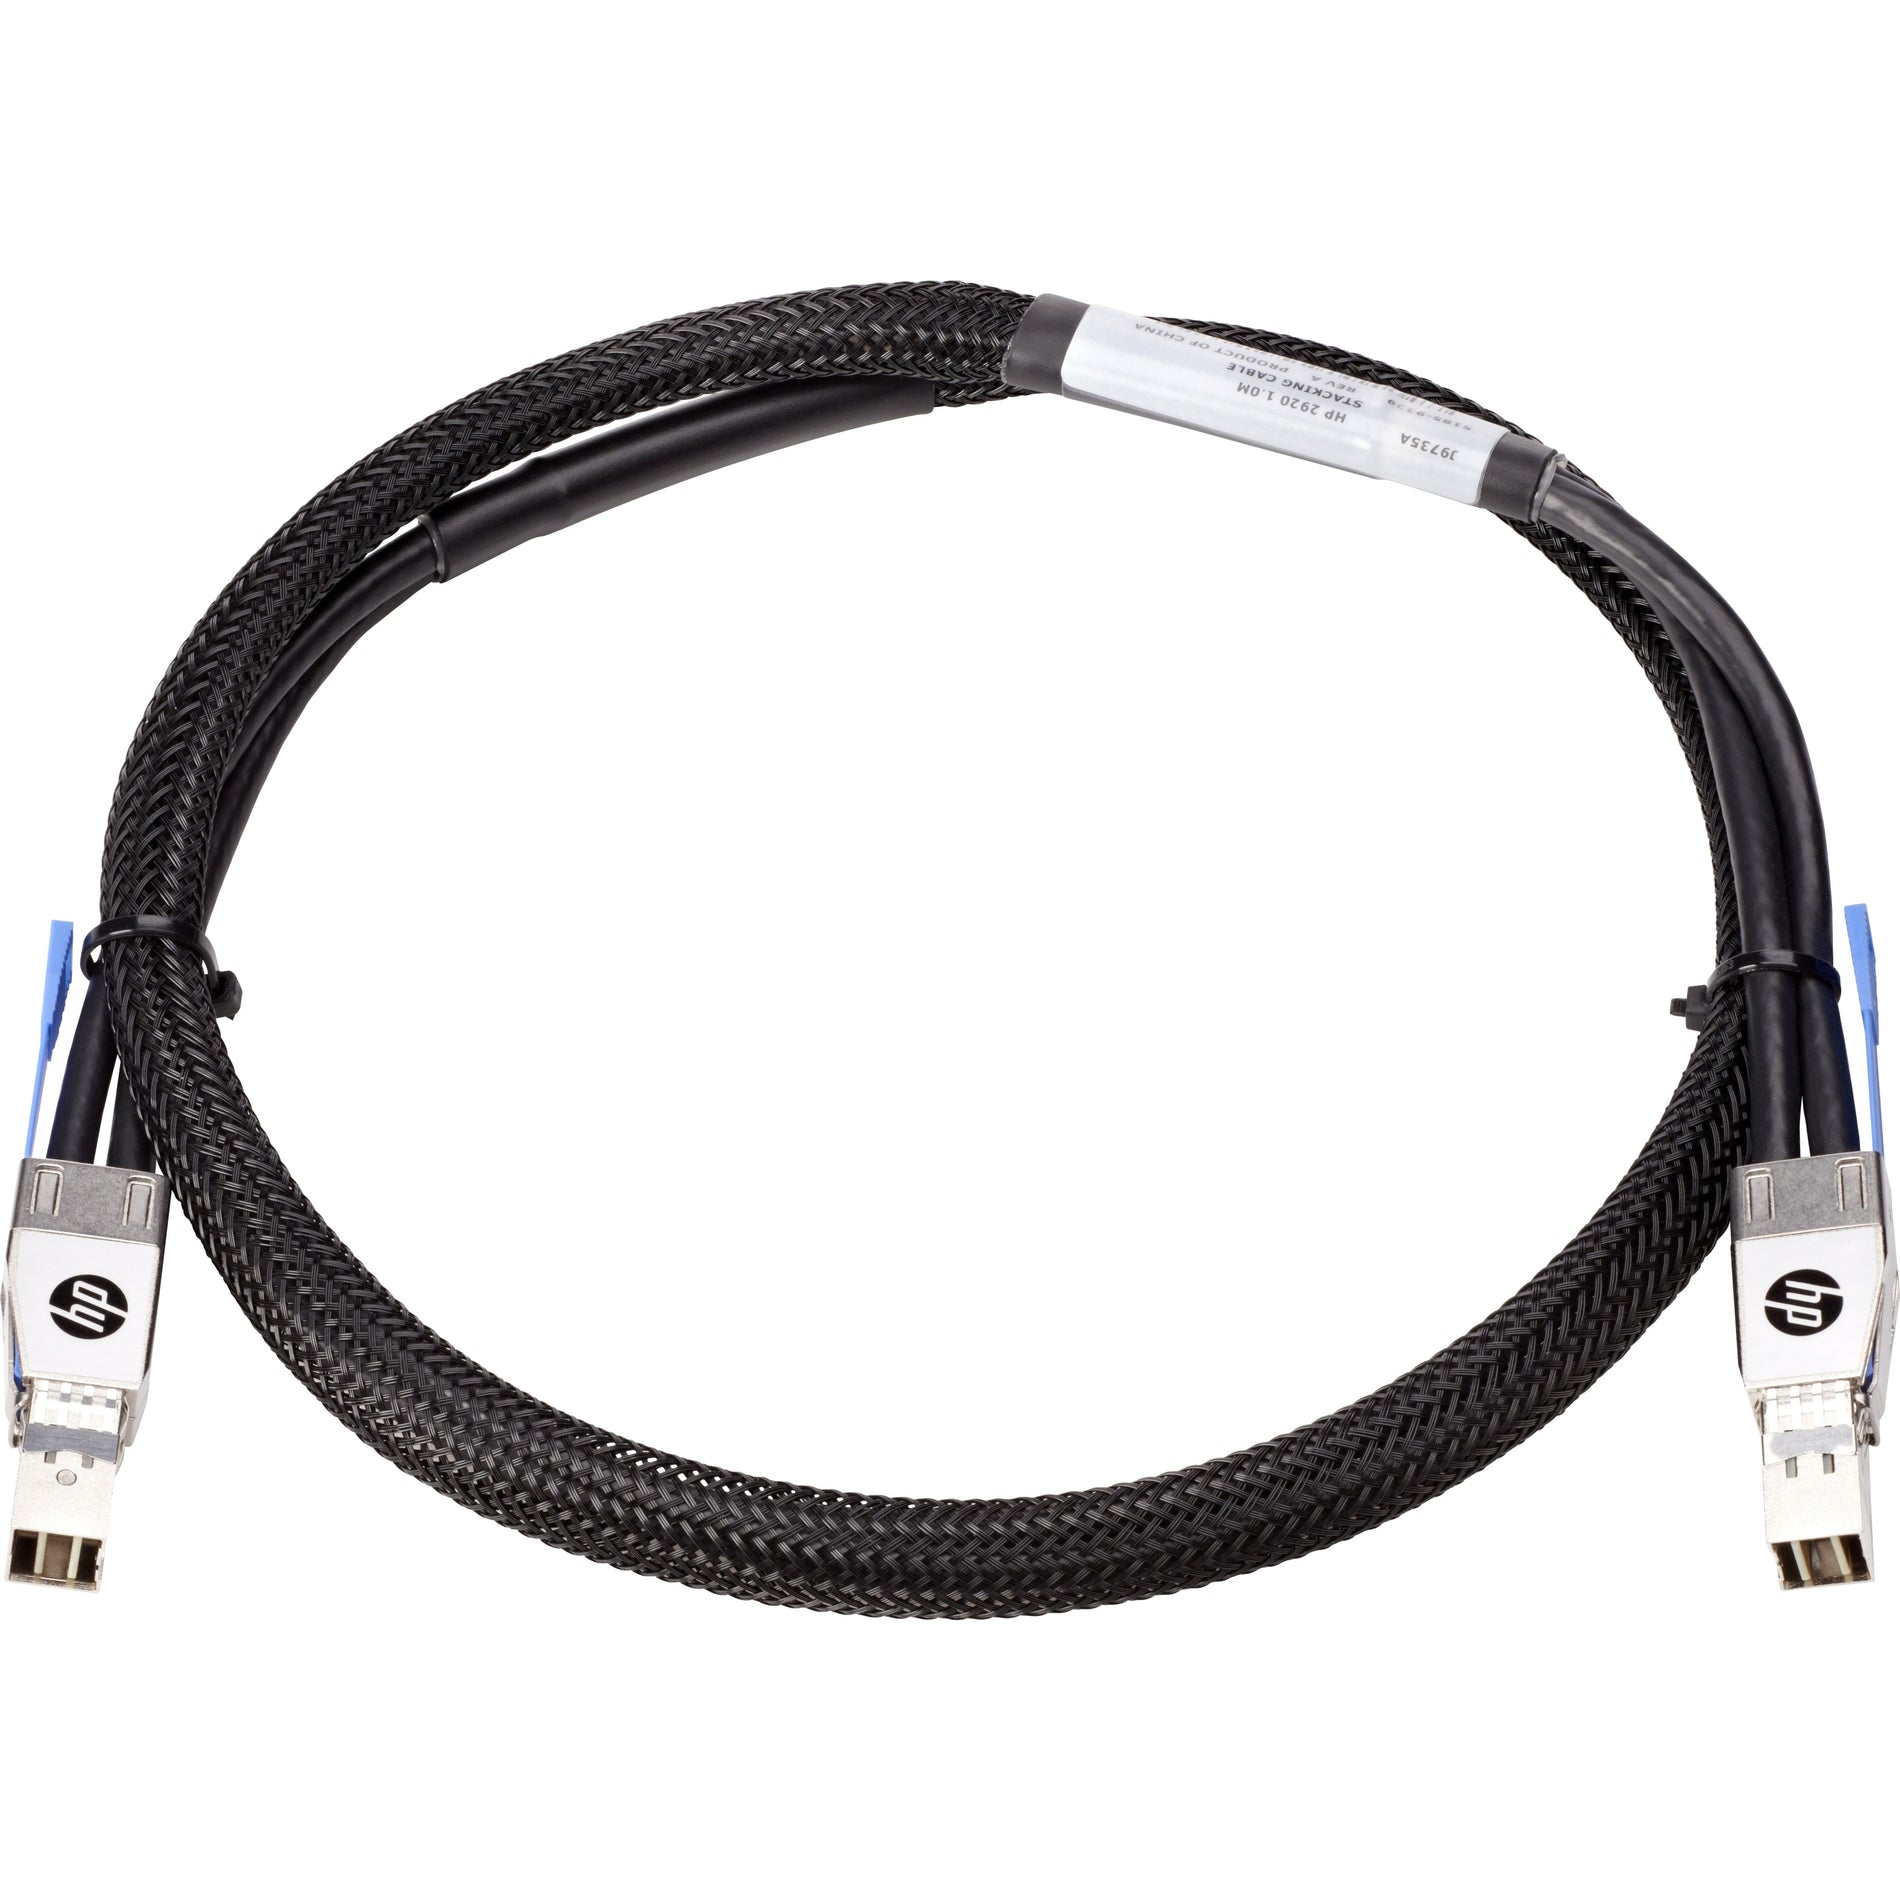 HPE J9735A 2920 1m スタッキング ケーブル、高品質 ネットワーク ケーブル for 簡単 スタッキング ブランド名: HPE - エイチピーイー